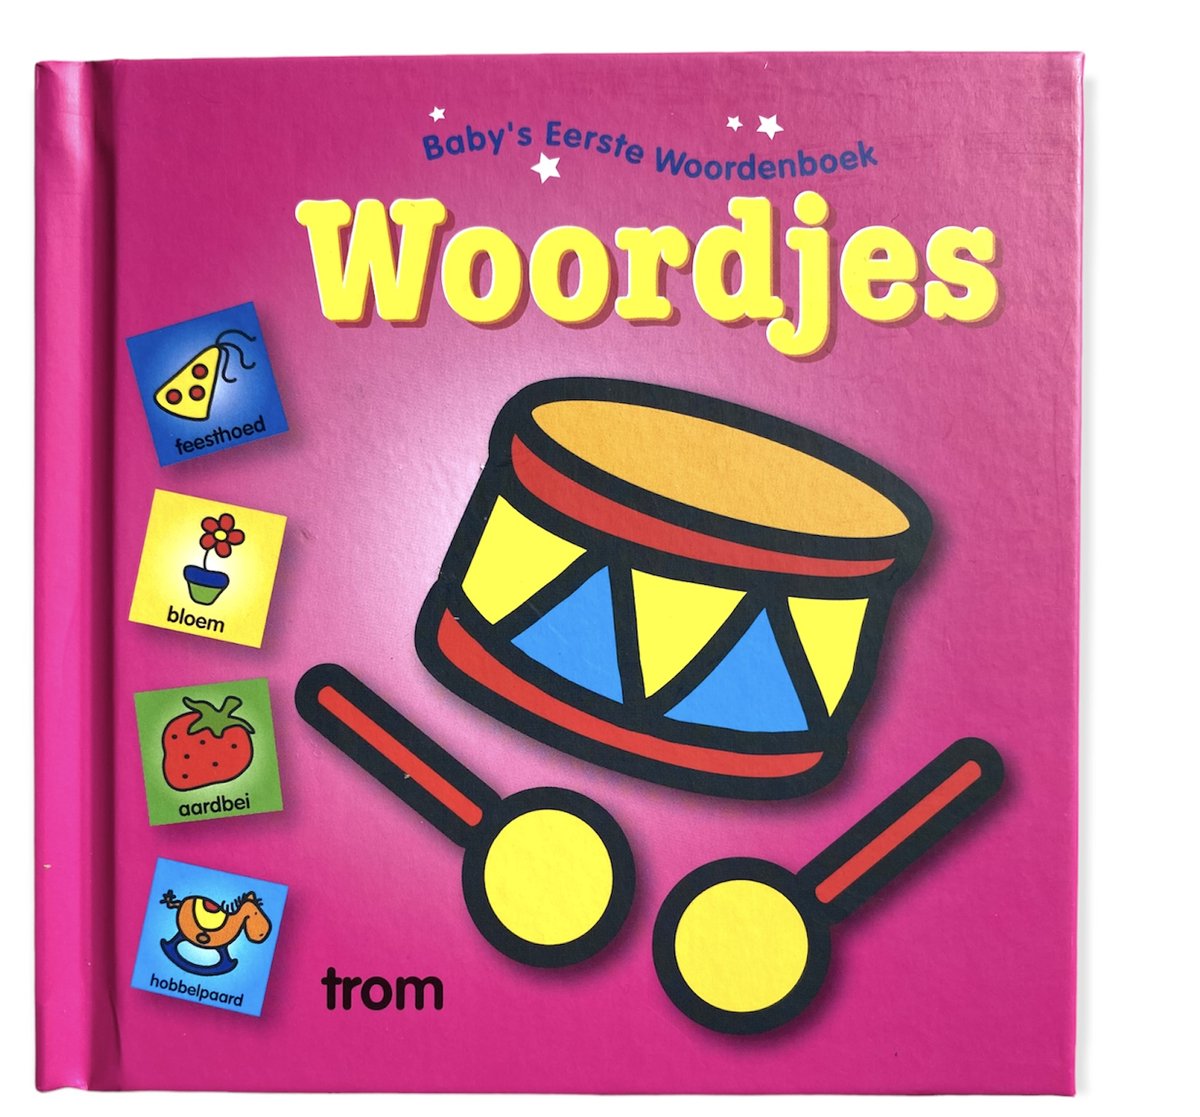 Baby's eerste woordenboek - Woordjes - 37 pagina's - Babyboekje